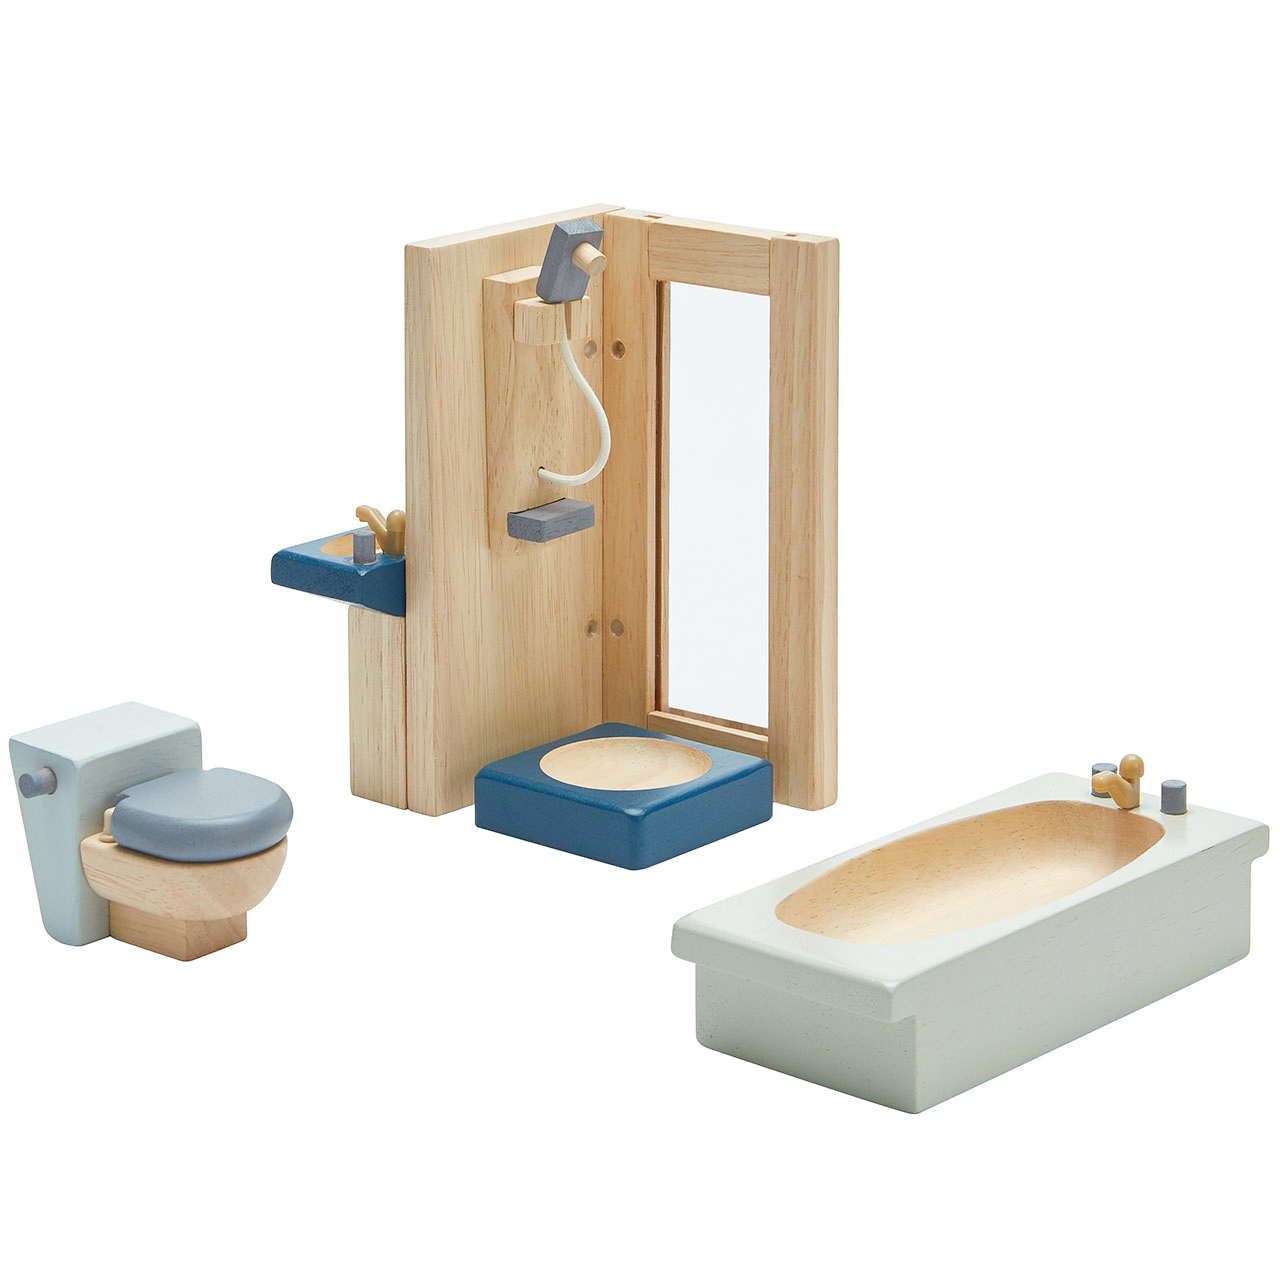 WC Inkl Puppenhausmöbel aus Holz für Badezimmer Dusche mit Badewanne 